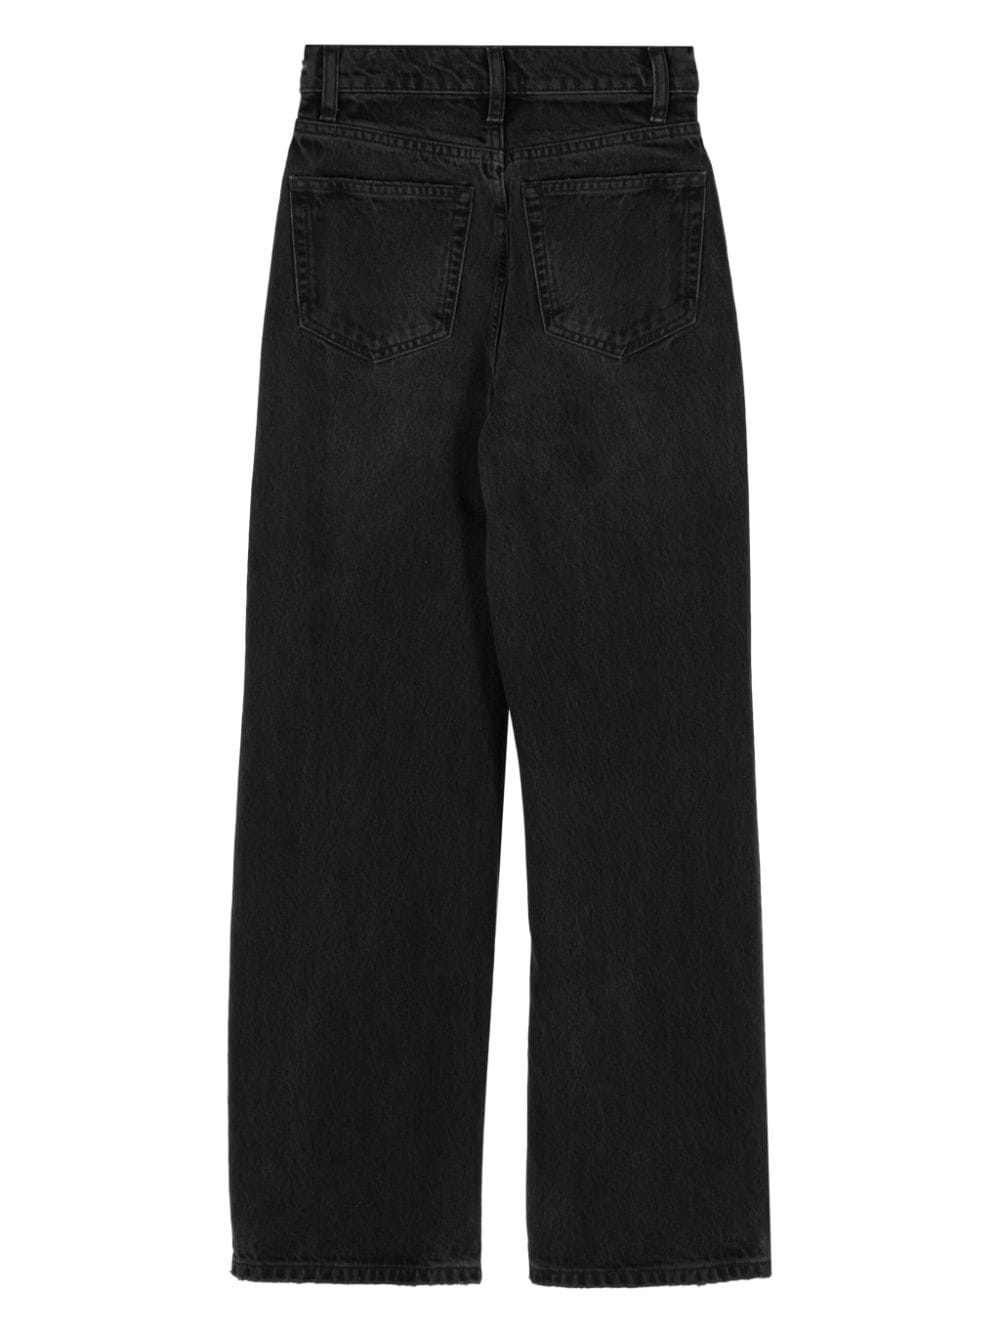 Reformation Jeans - Zwart